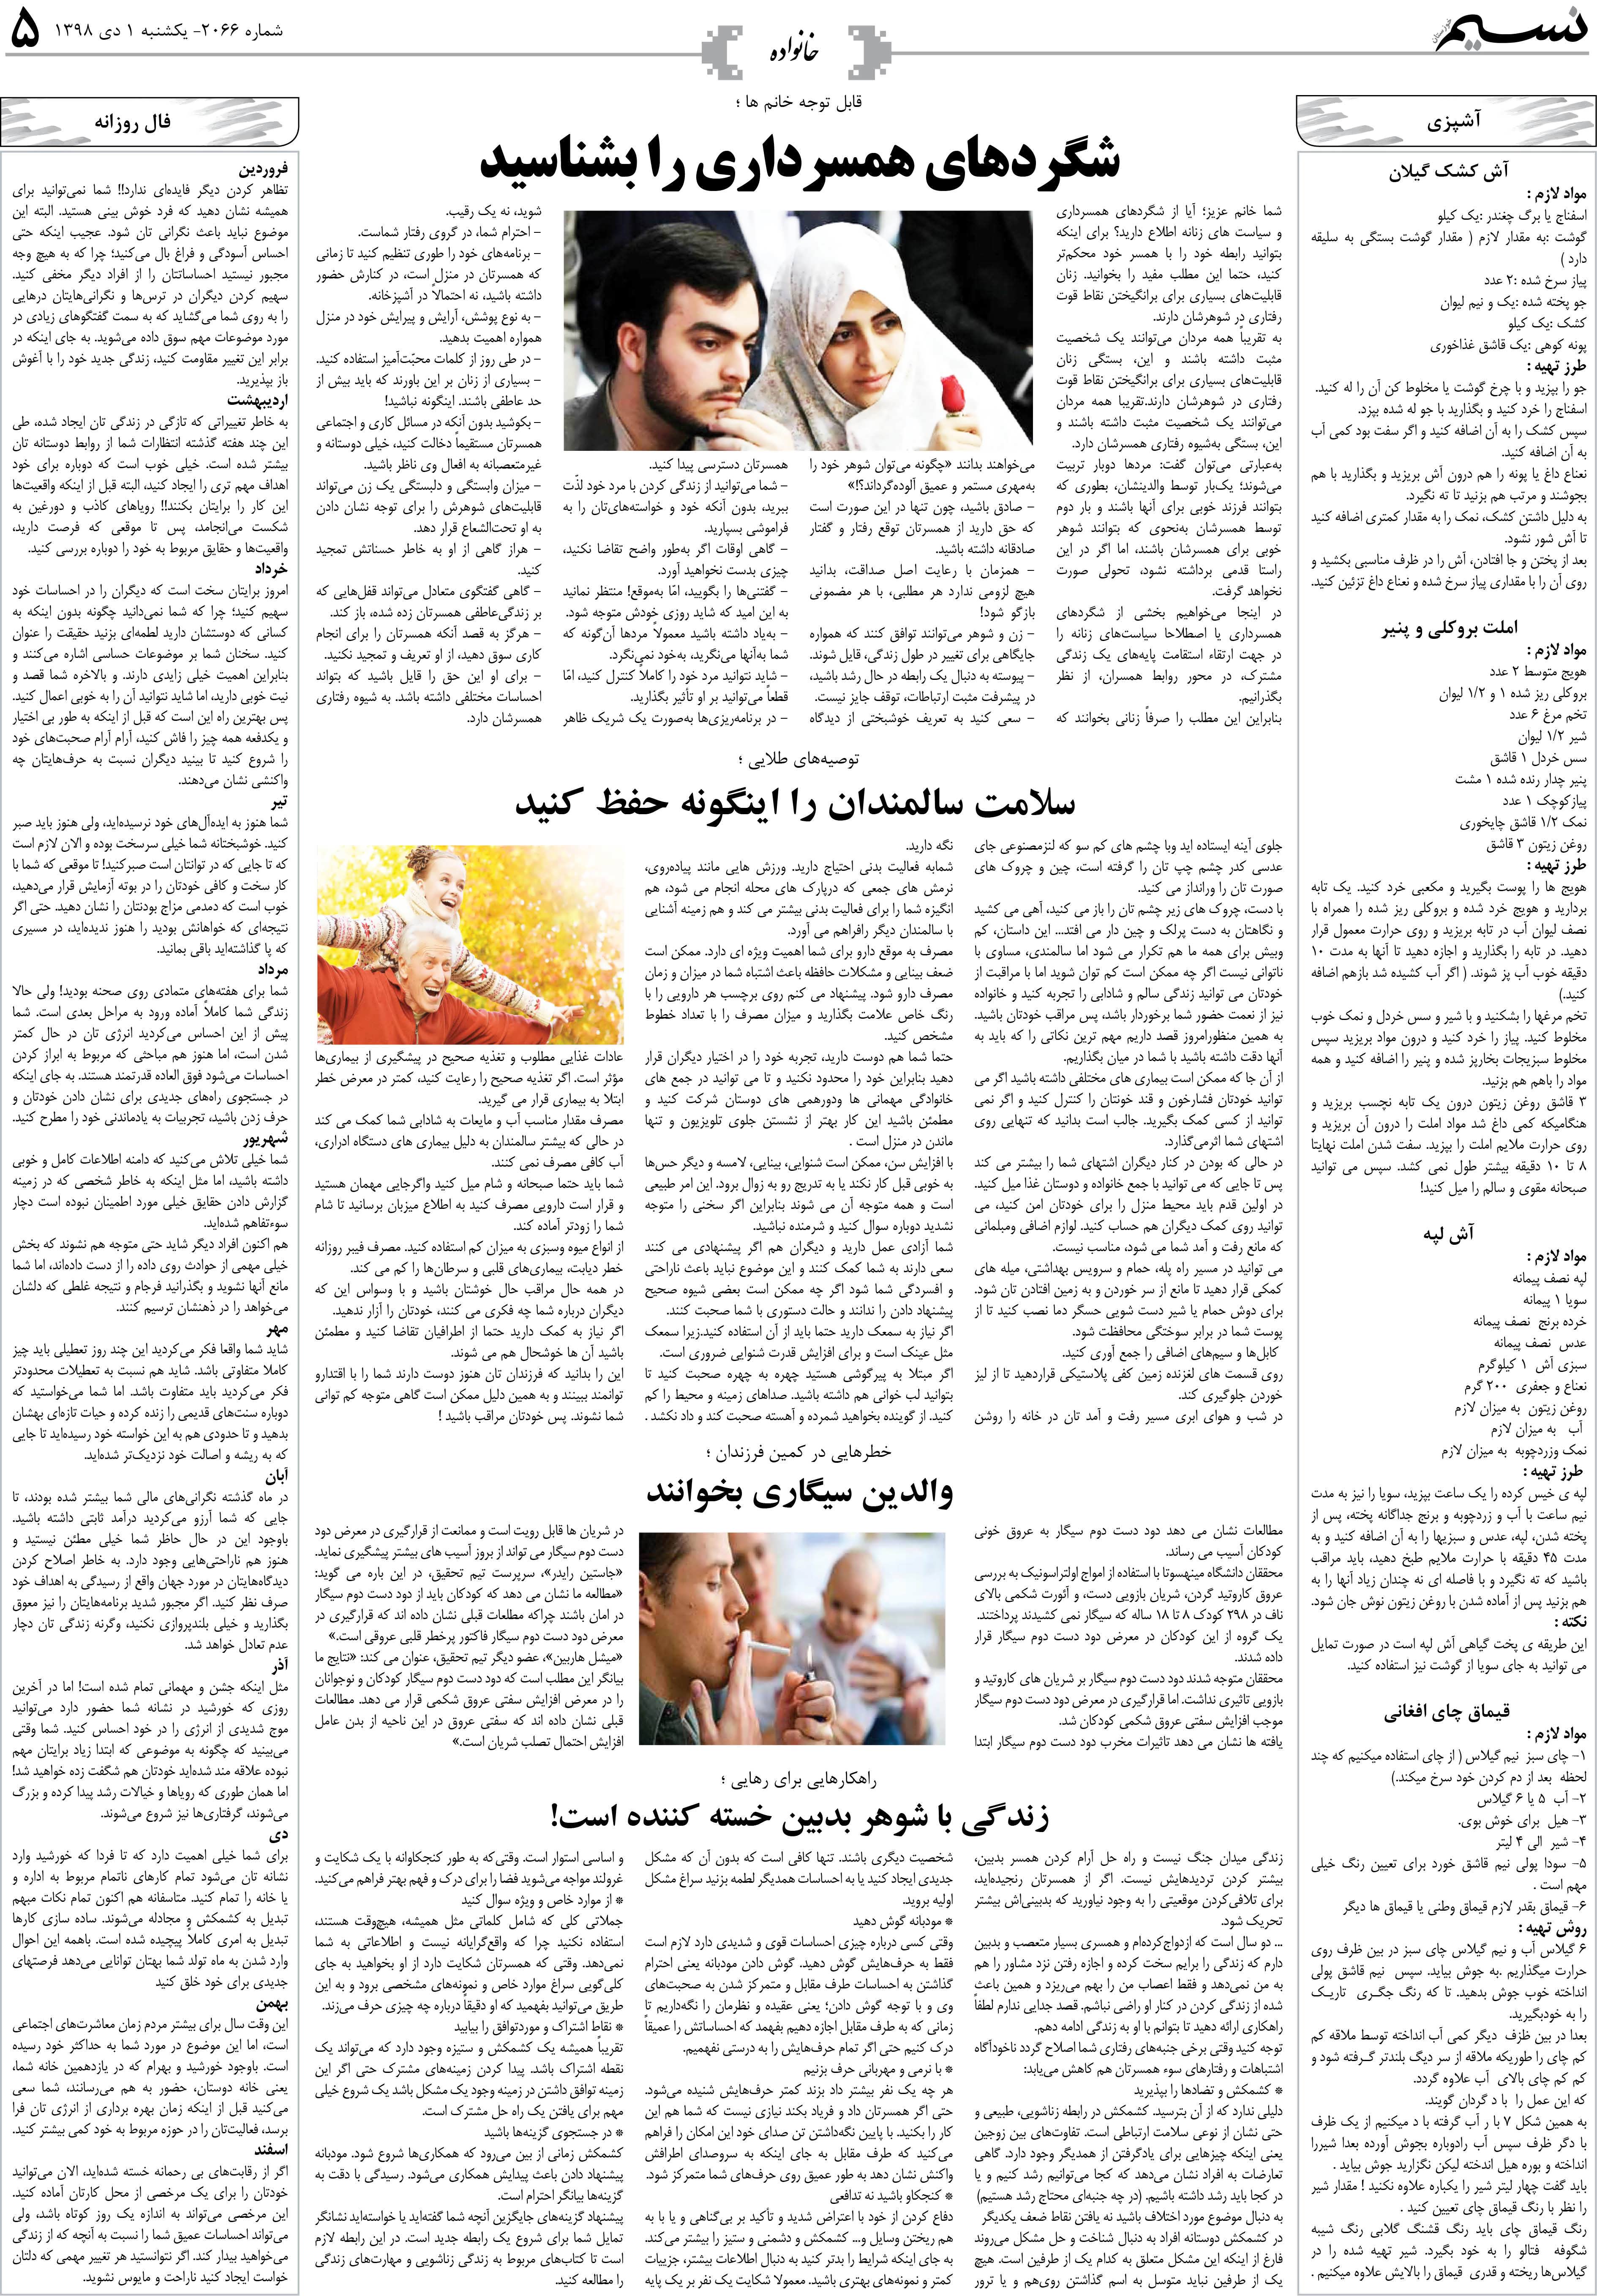 صفحه خانواده روزنامه نسیم شماره 2066